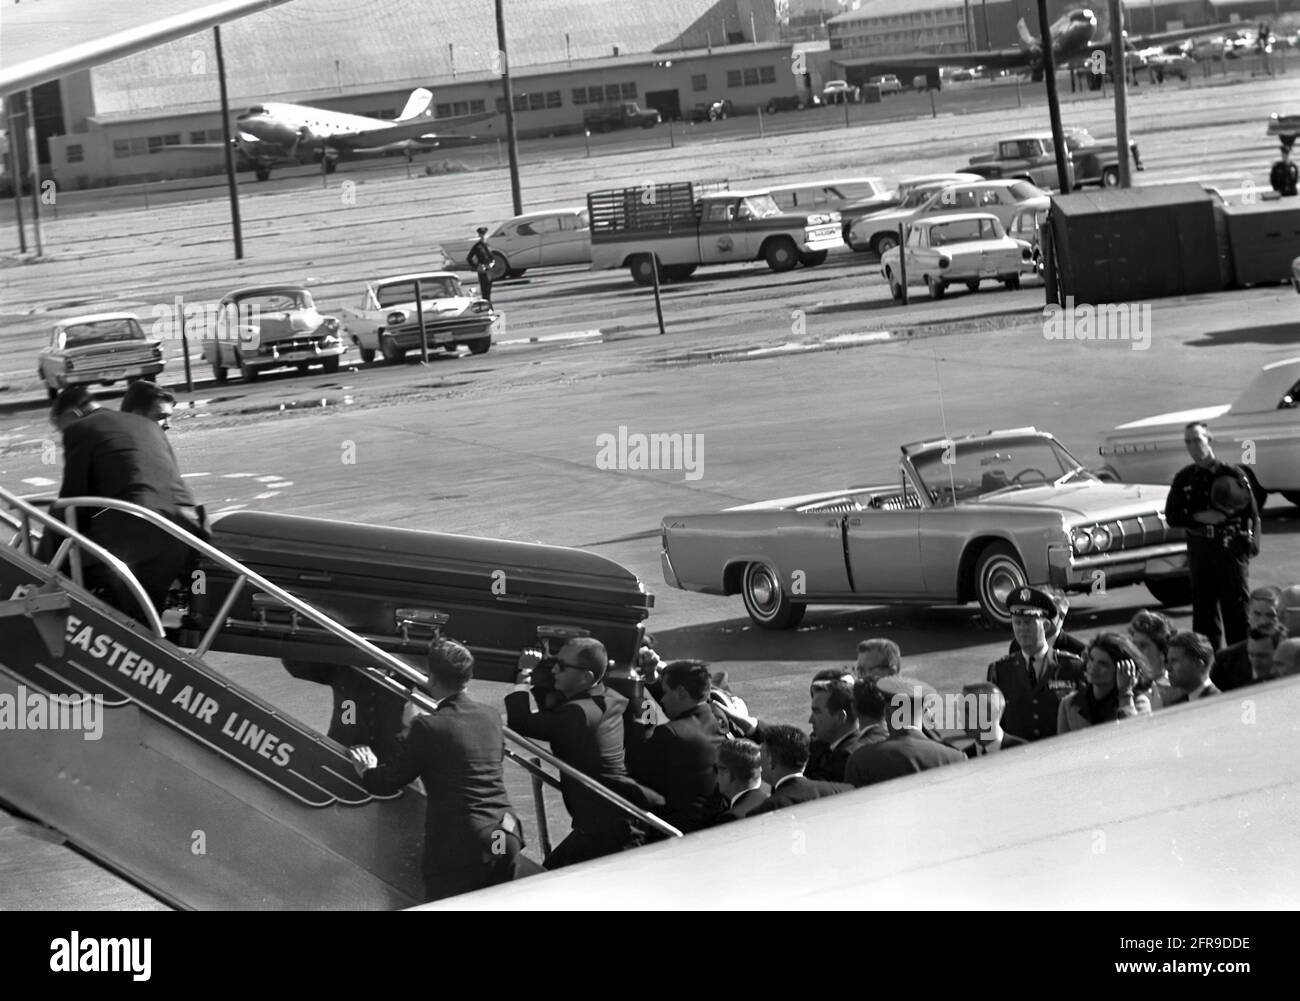 ST-527-11-63 22 novembre 1963 le dossier du Président Kennedy est chargé sur Air Force One à Love Field, Dallas. Veuillez indiquer « Cecil Stoughton ». Photos de la Maison Blanche. John F. Kennedy Presidential Library and Museum, Boston.' Banque D'Images